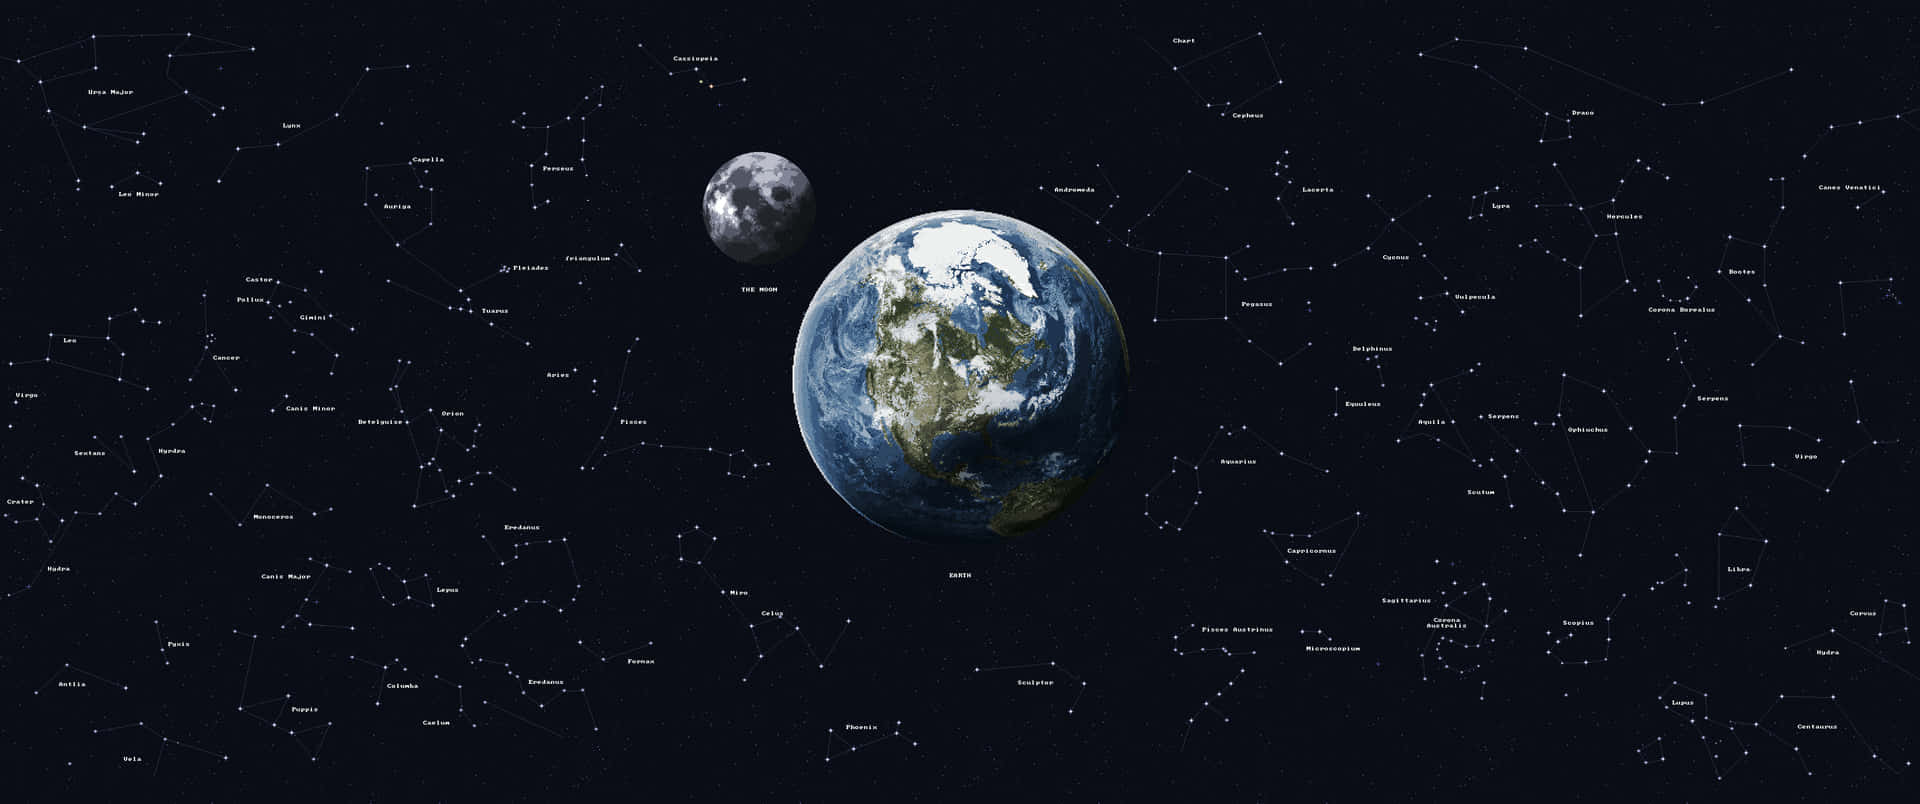 Vistaespacial De La Tierra Y La Luna, En 3440x1440 Fondo de pantalla